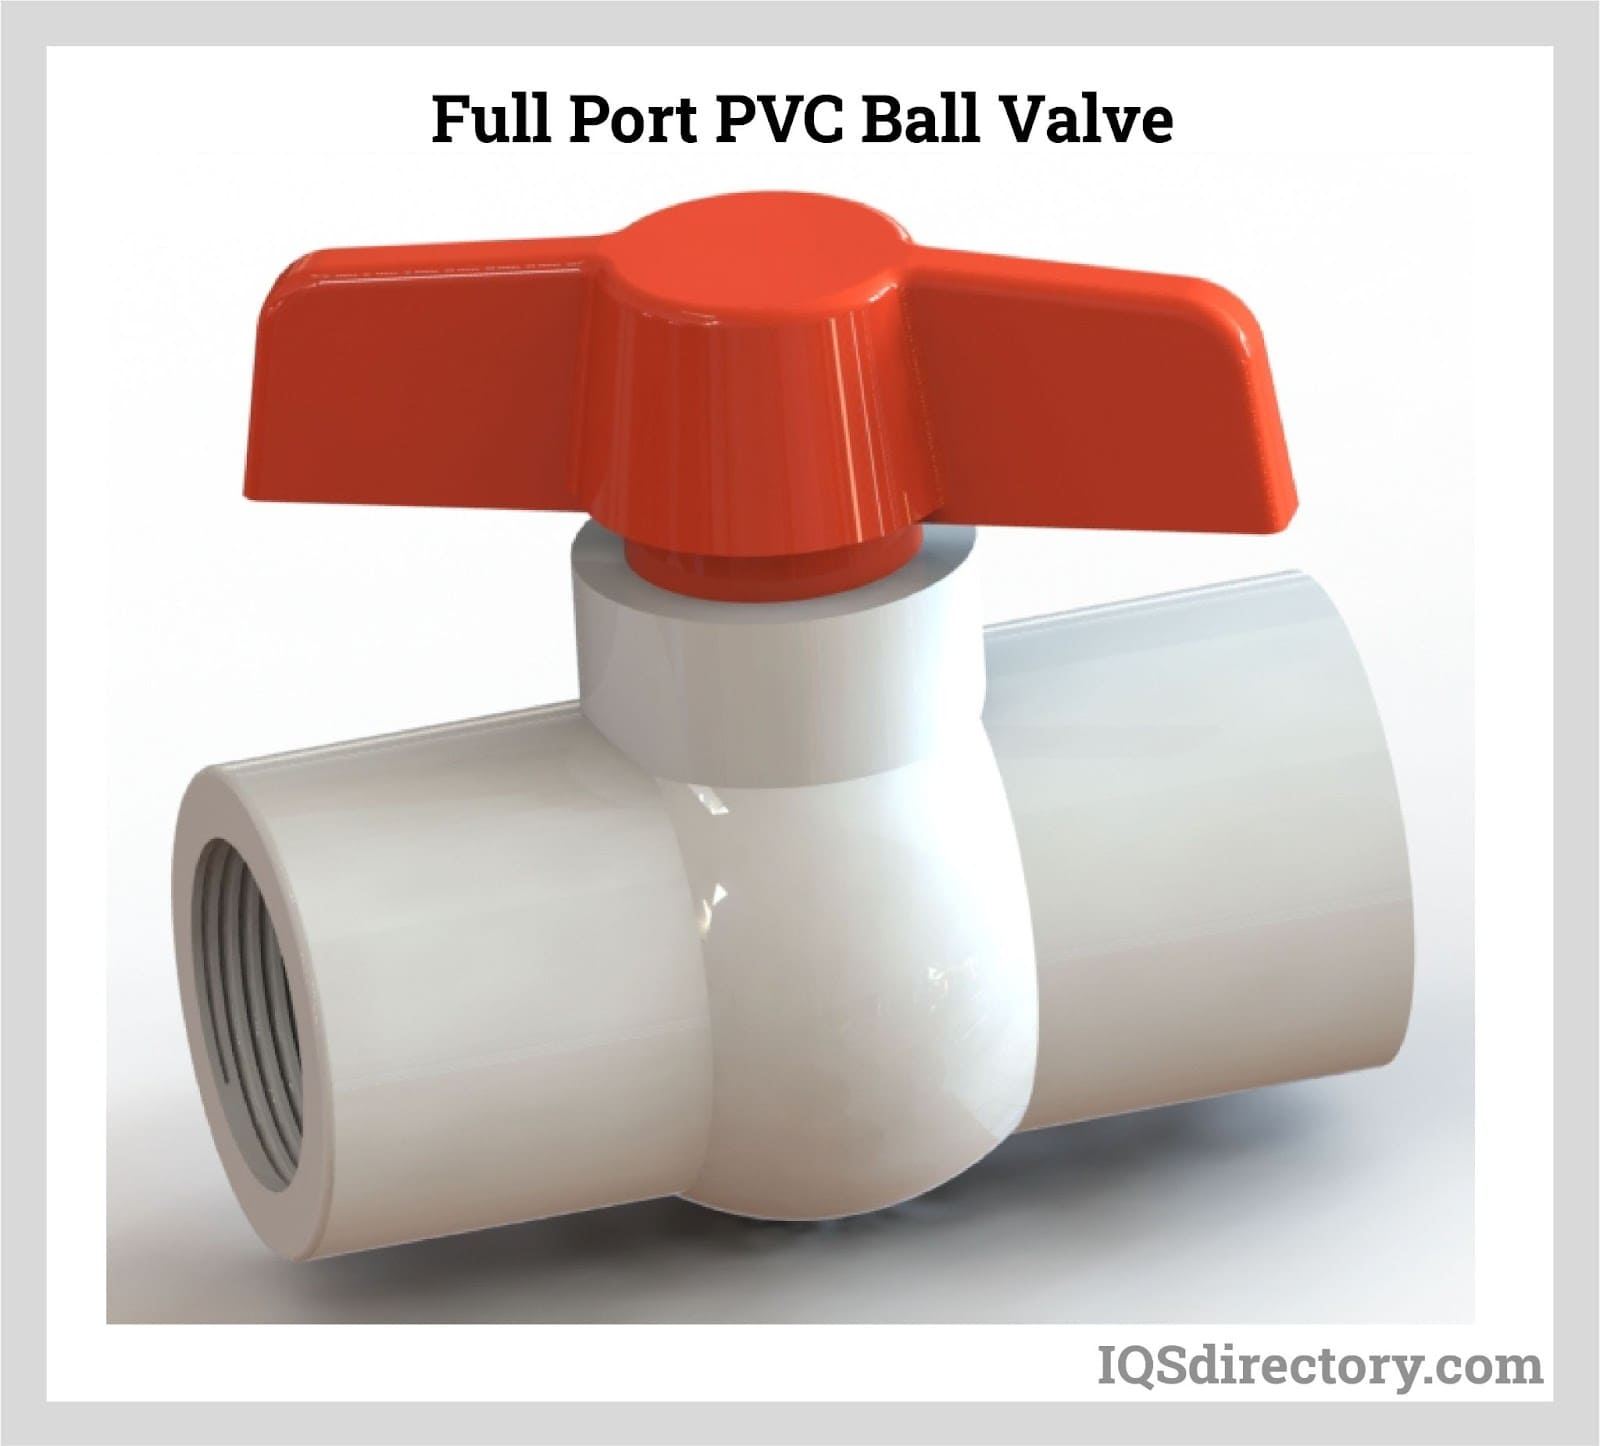 Full Port PVC Ball Valve